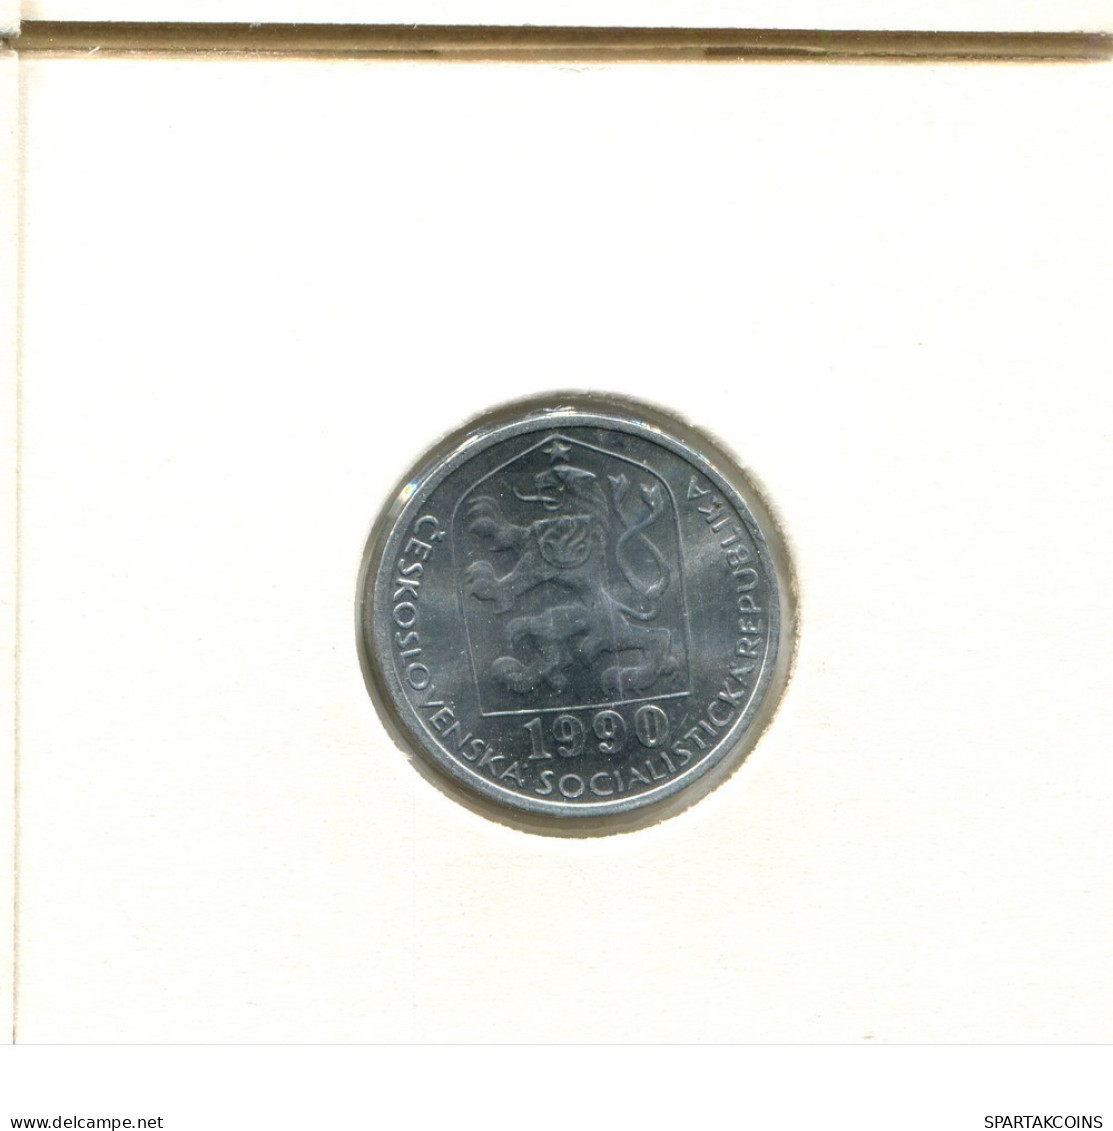 10 HALERU 1990 CHECOSLOVAQUIA CZECHOESLOVAQUIA SLOVAKIA Moneda #AZ936.E.A - Czechoslovakia